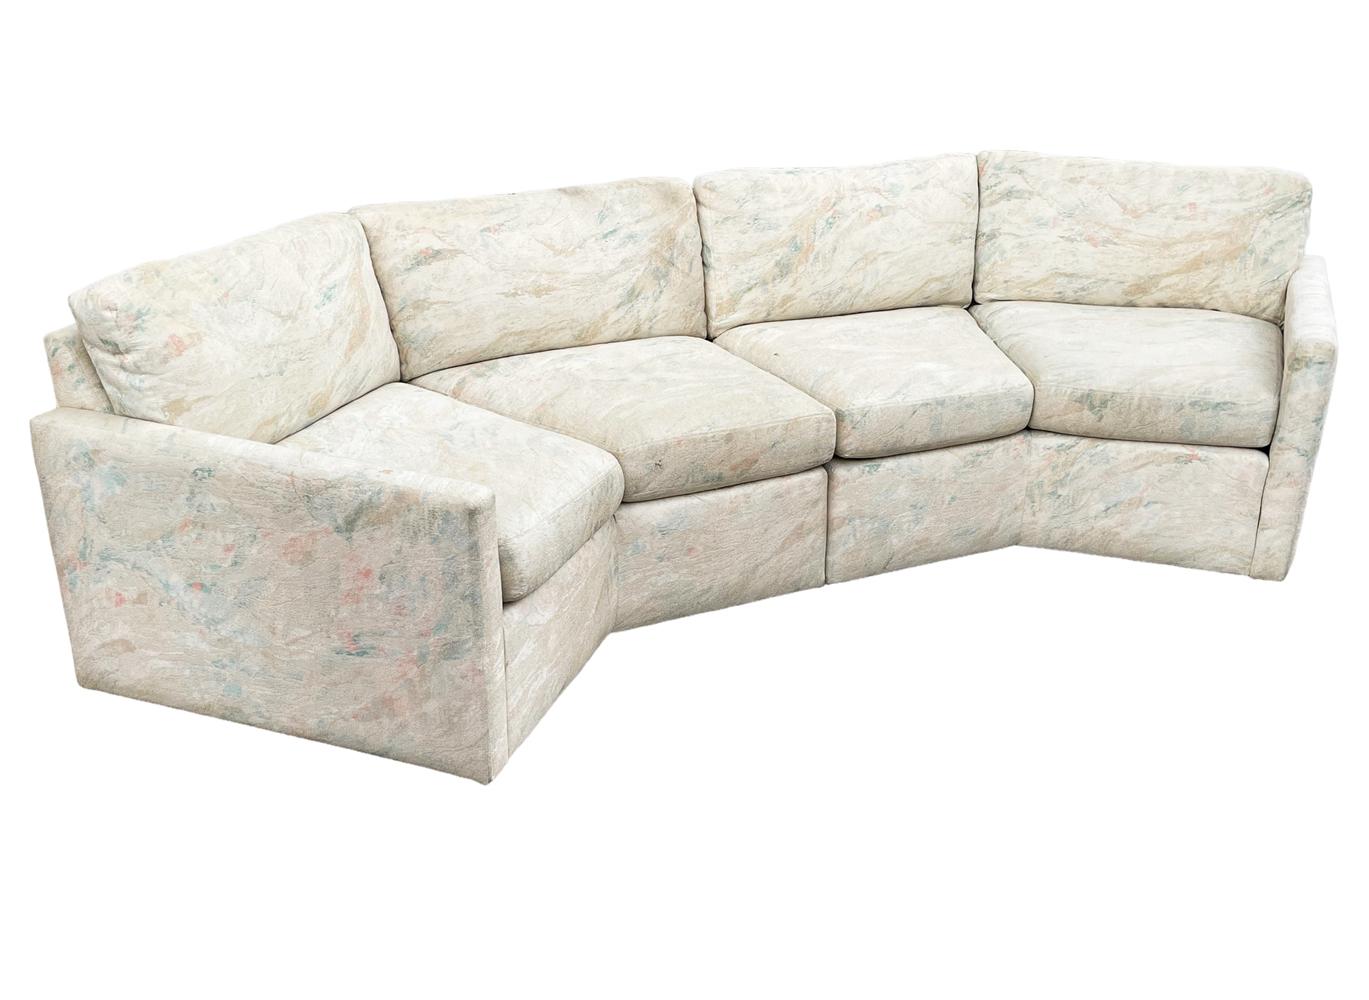 hexagonal couch